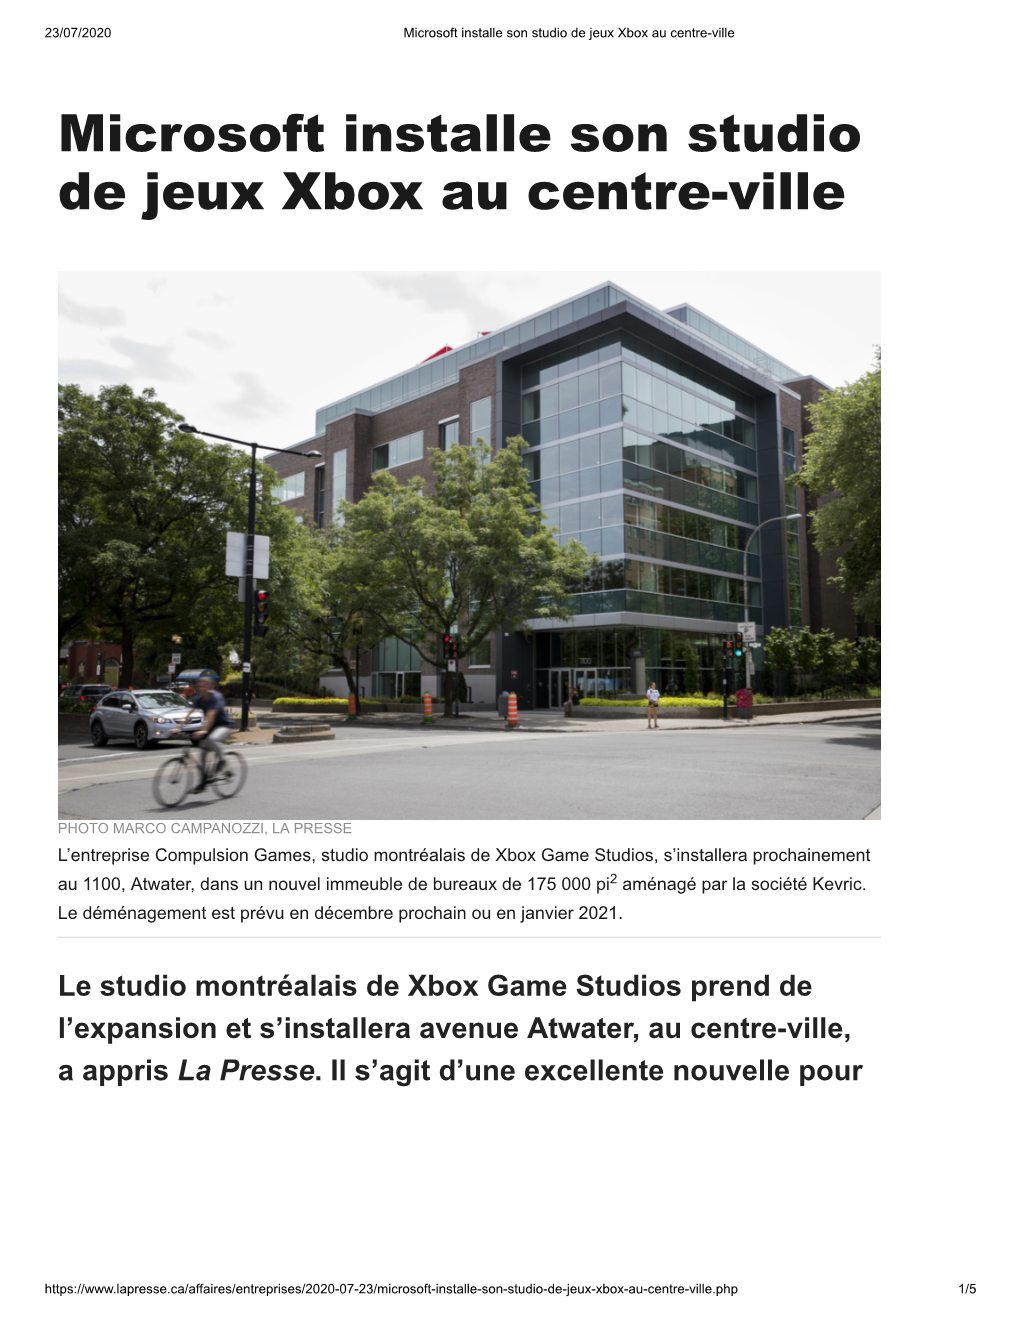 Microsoft Installe Son Studio De Jeux Xbox Au Centre-Ville